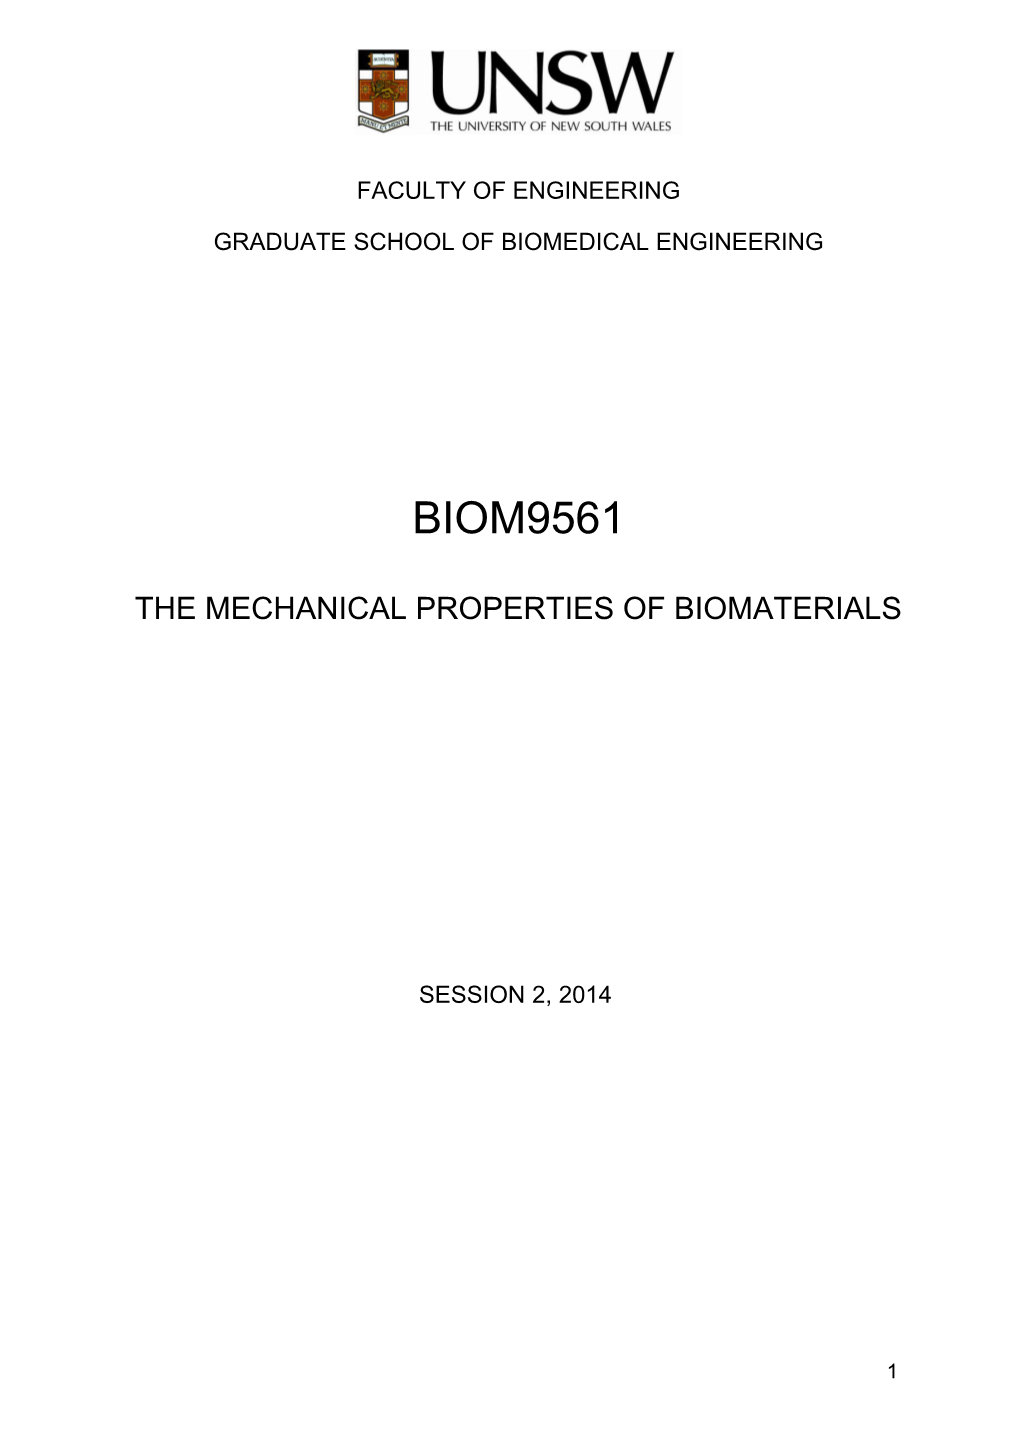 Graduate School of Biomedical Engineering